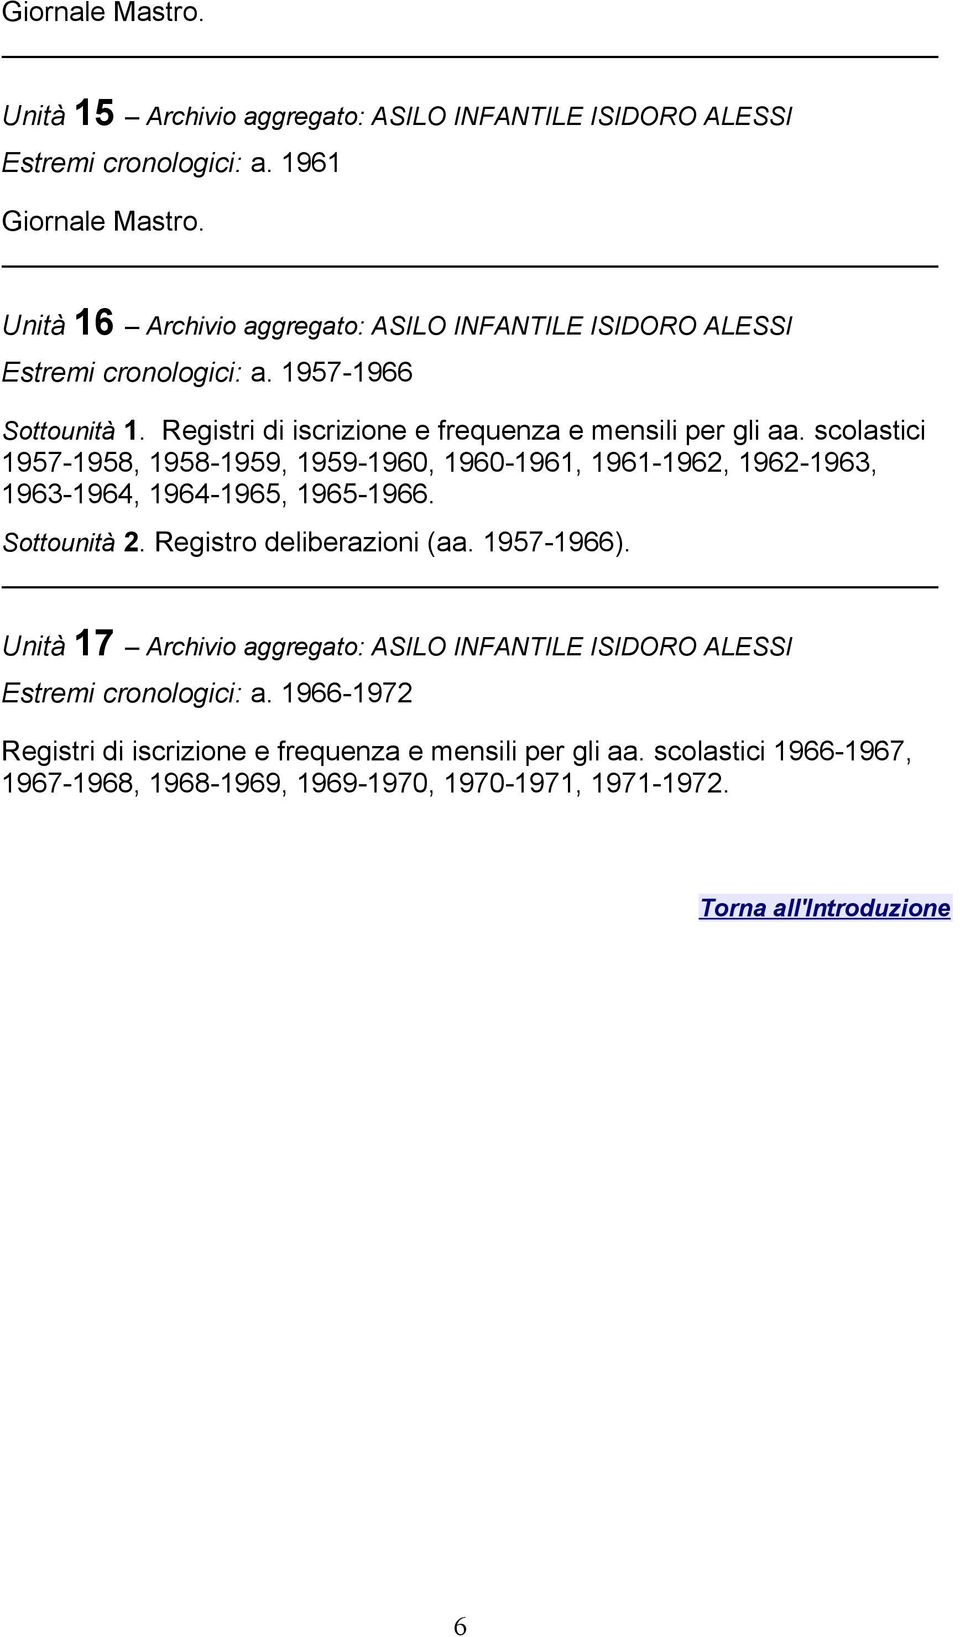 Registri di iscrizione e frequenza e mensili per gli aa. scolastici 1957-1958, 1958-1959, 1959-1960, 1960-1961, 1961-1962, 1962-1963, 1963-1964, 1964-1965, 1965-1966.